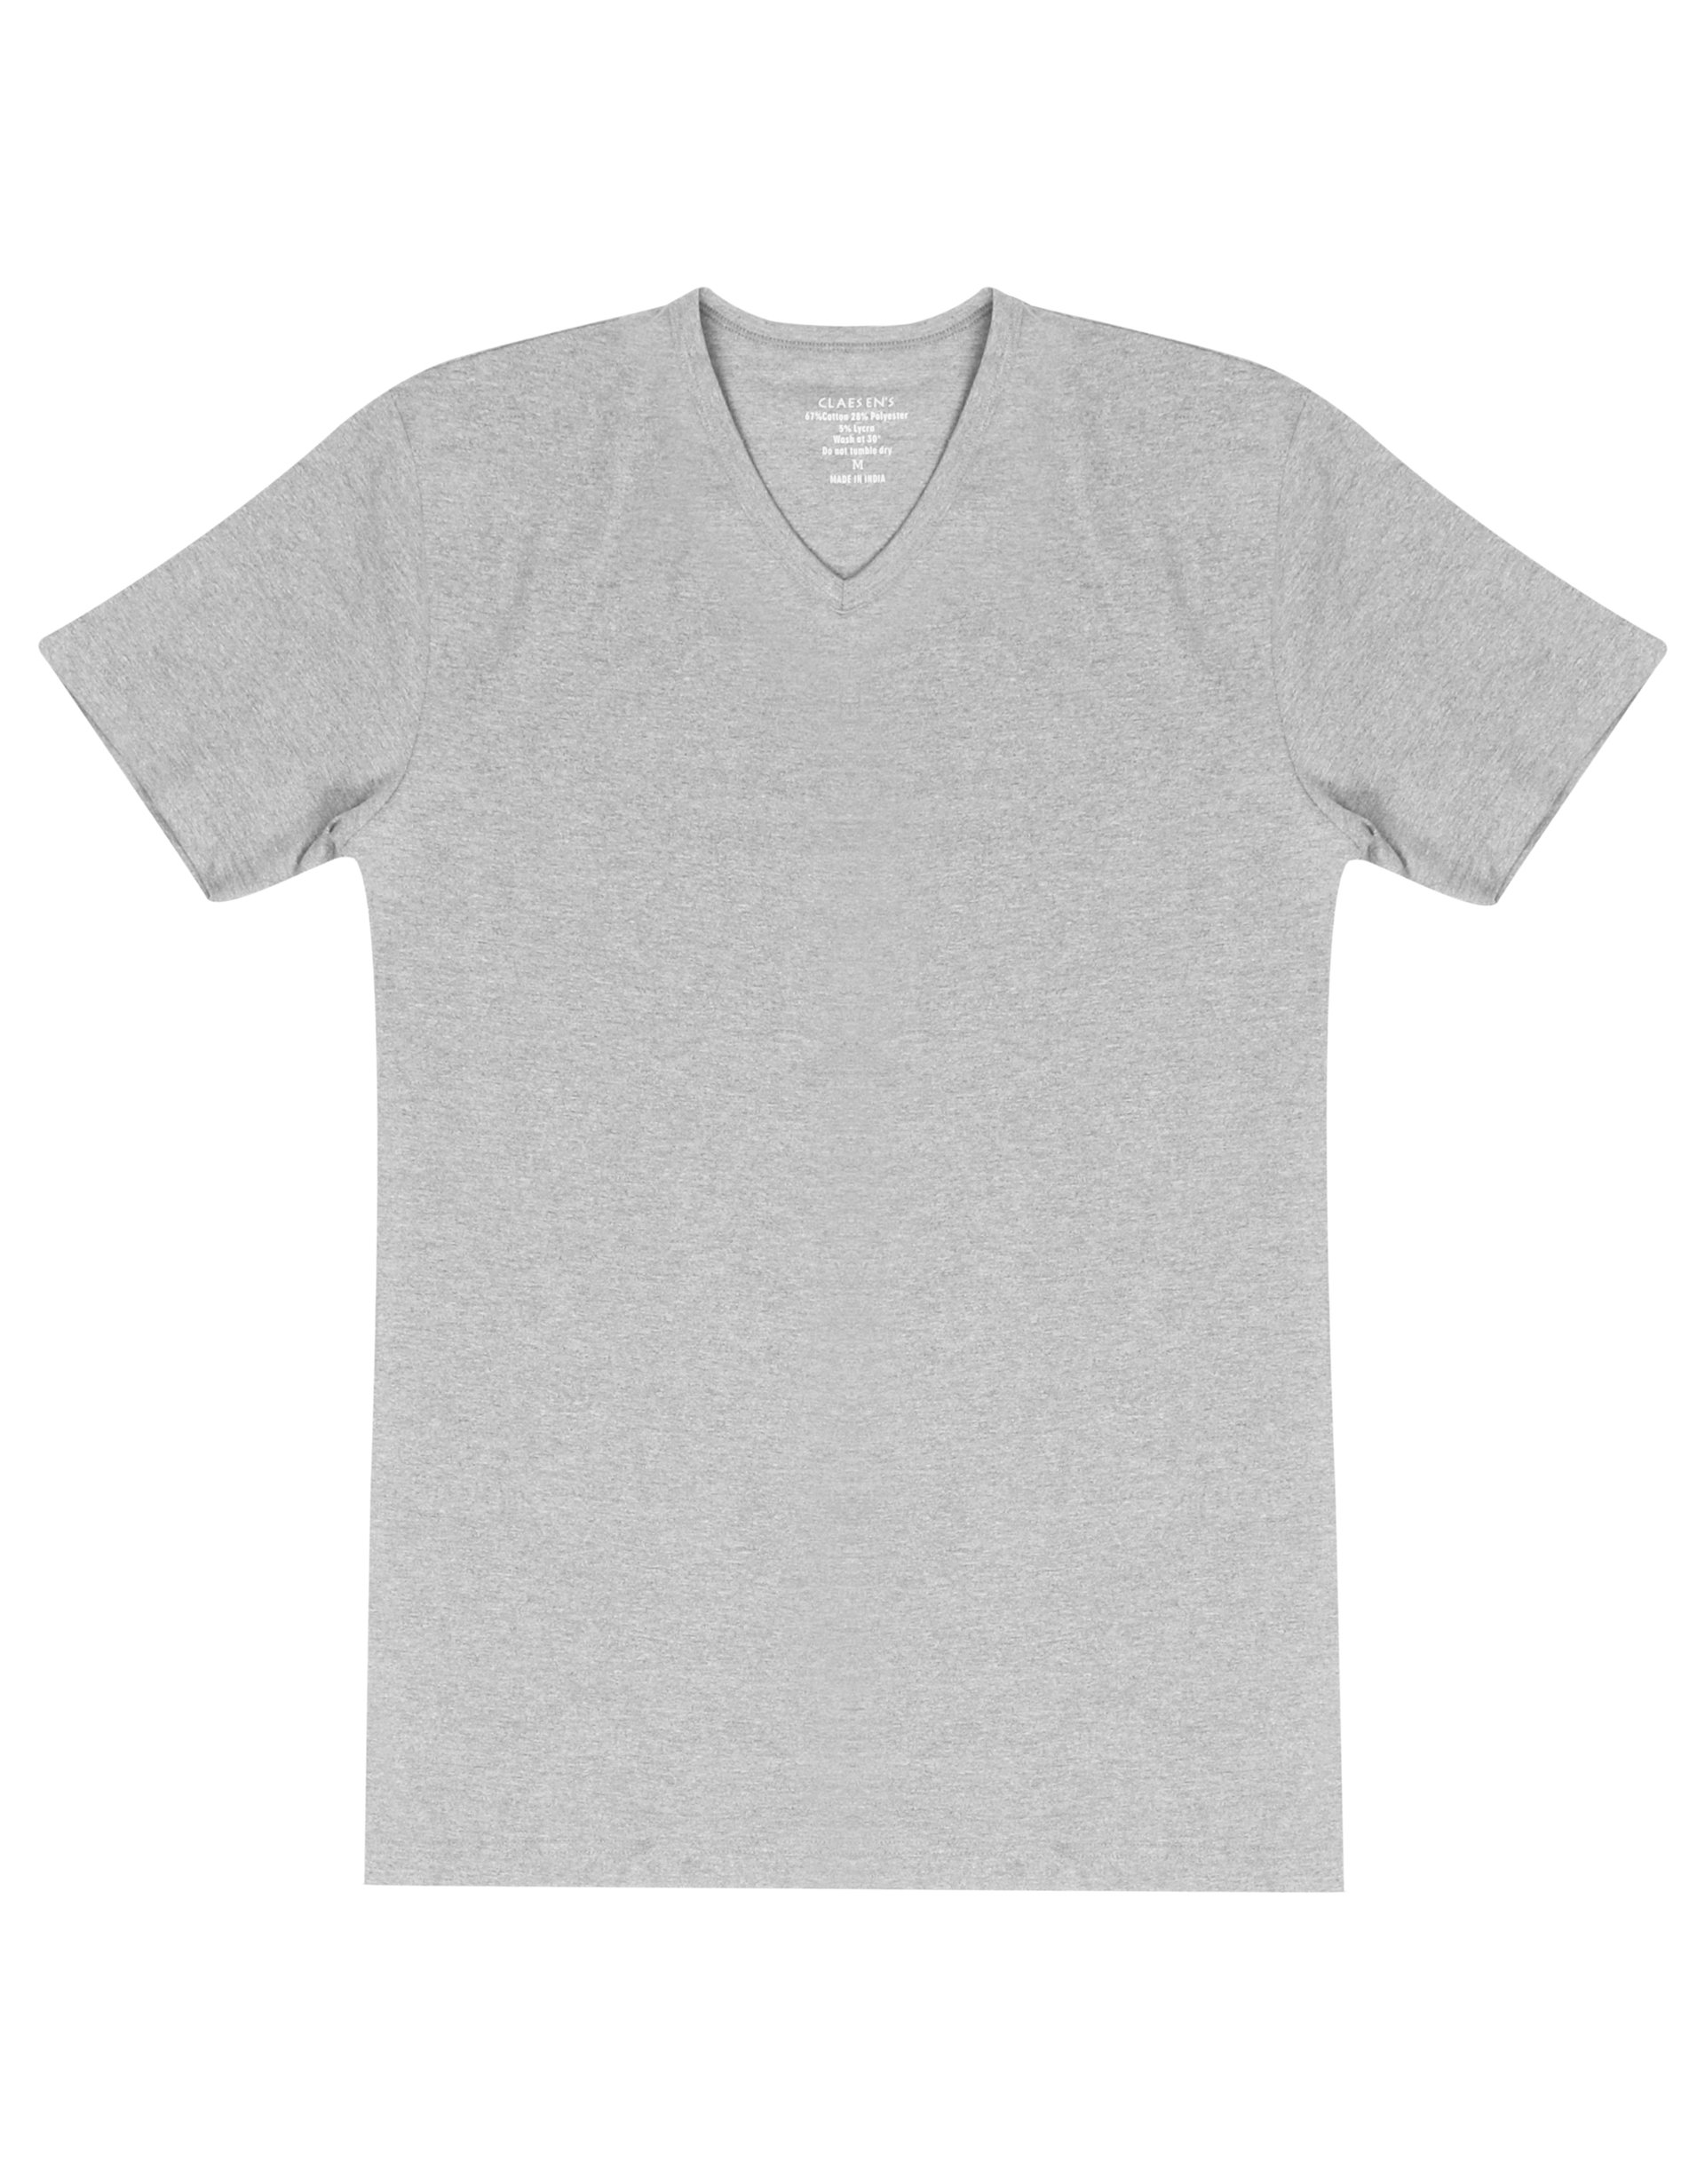 Claesen's Basics T-shirt (2-pack), heren T-shirt V-hals, grijs